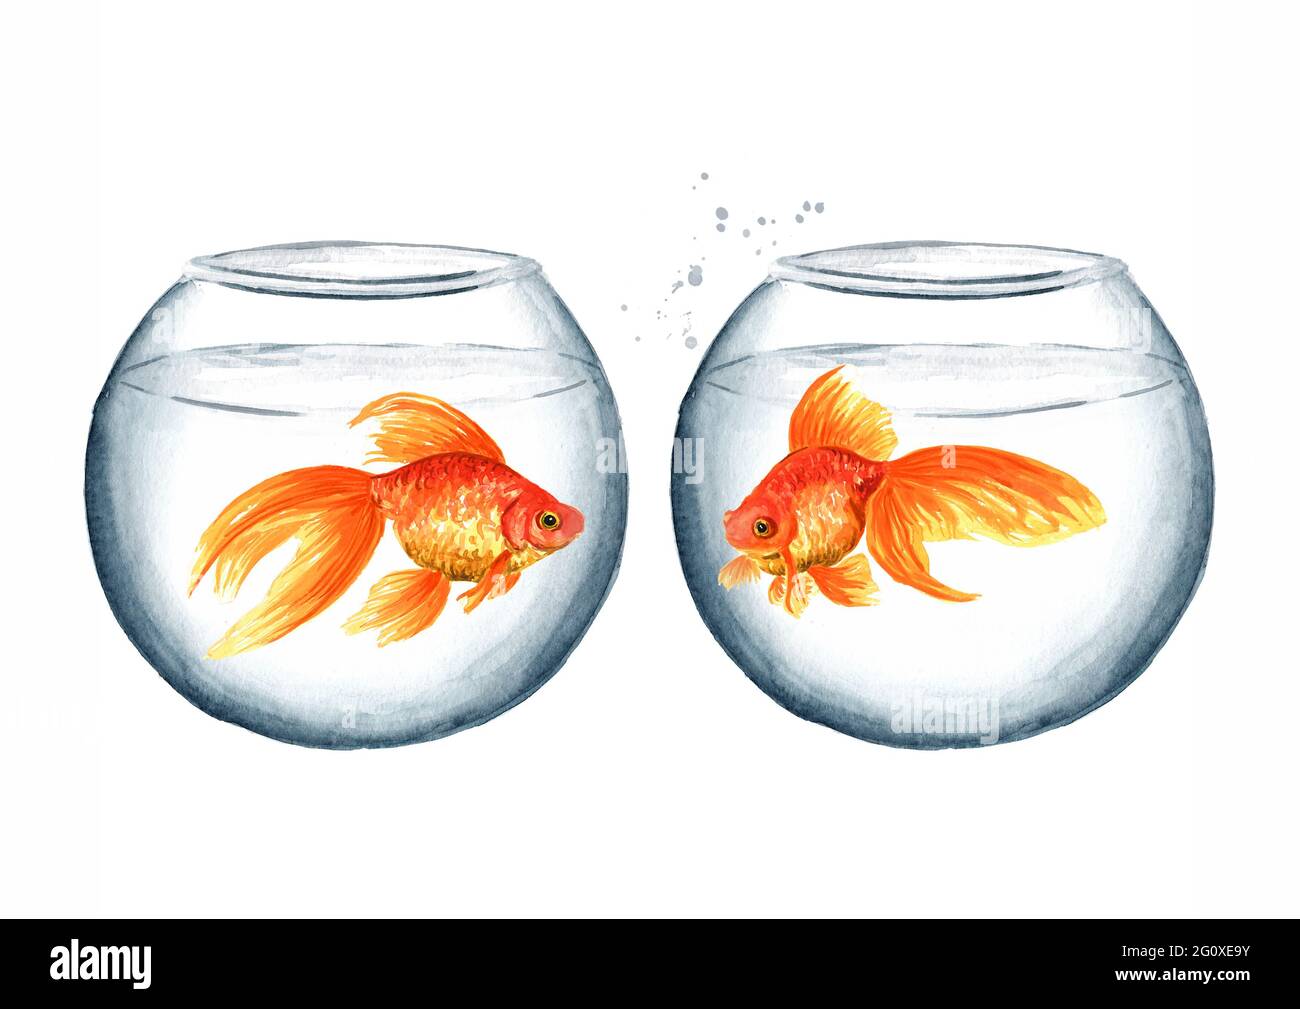 Acquario rotondo in due vetri con pesci rossi. Immagine disegnata a mano  con acquerello isolata su sfondo bianco Foto stock - Alamy